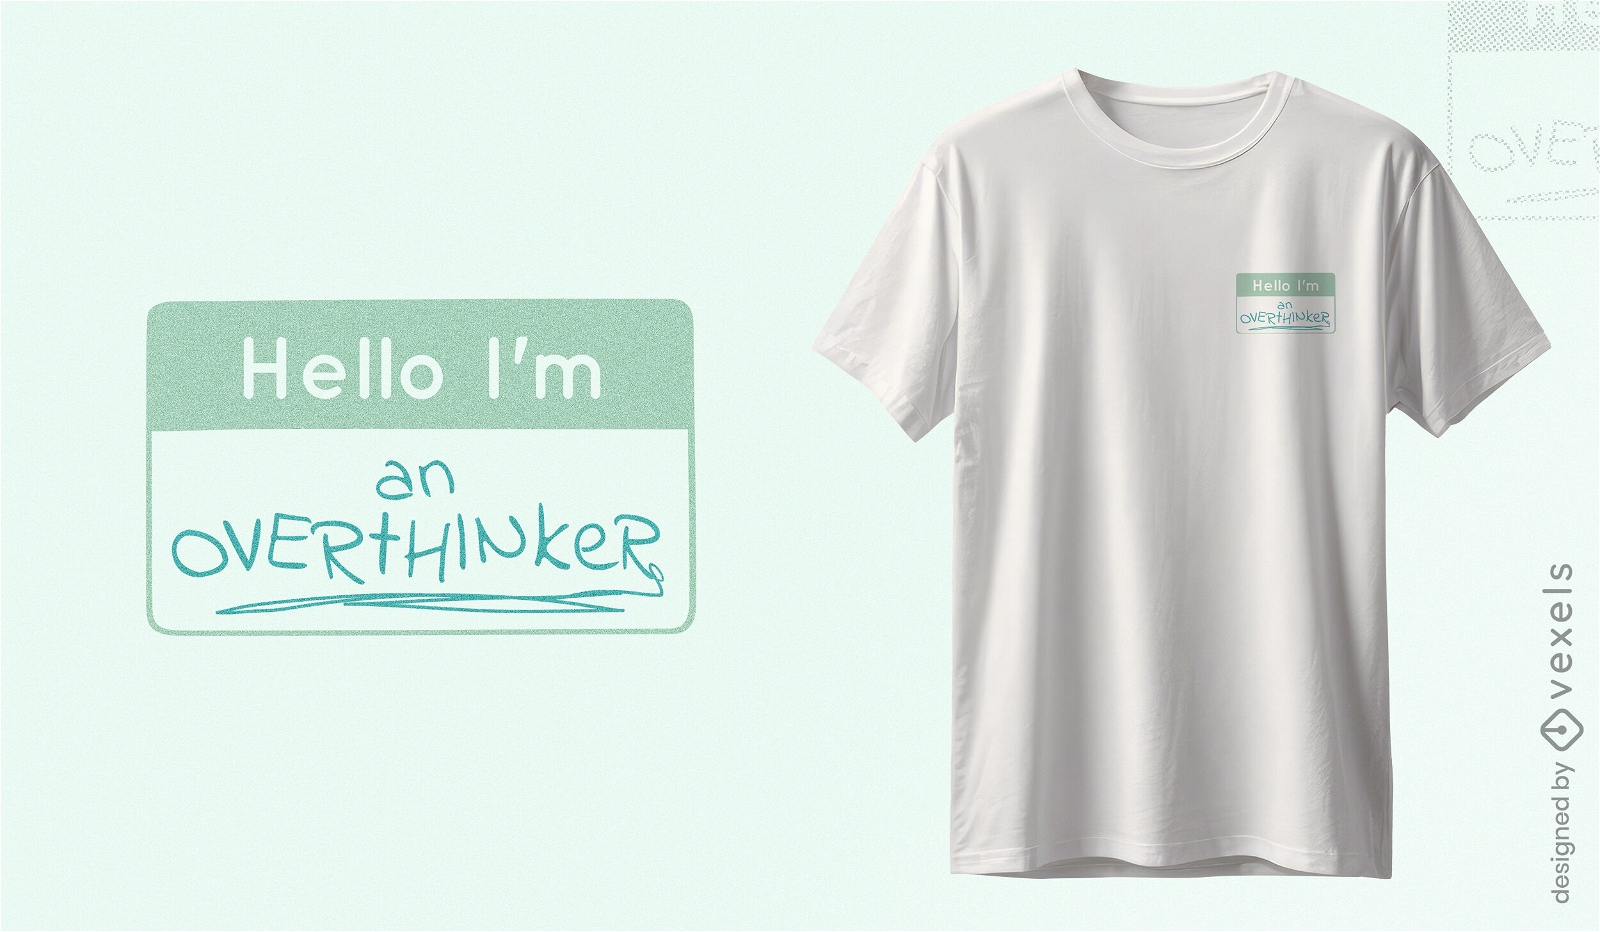 Dise?o de camiseta con etiqueta con nombre de Overthinker.